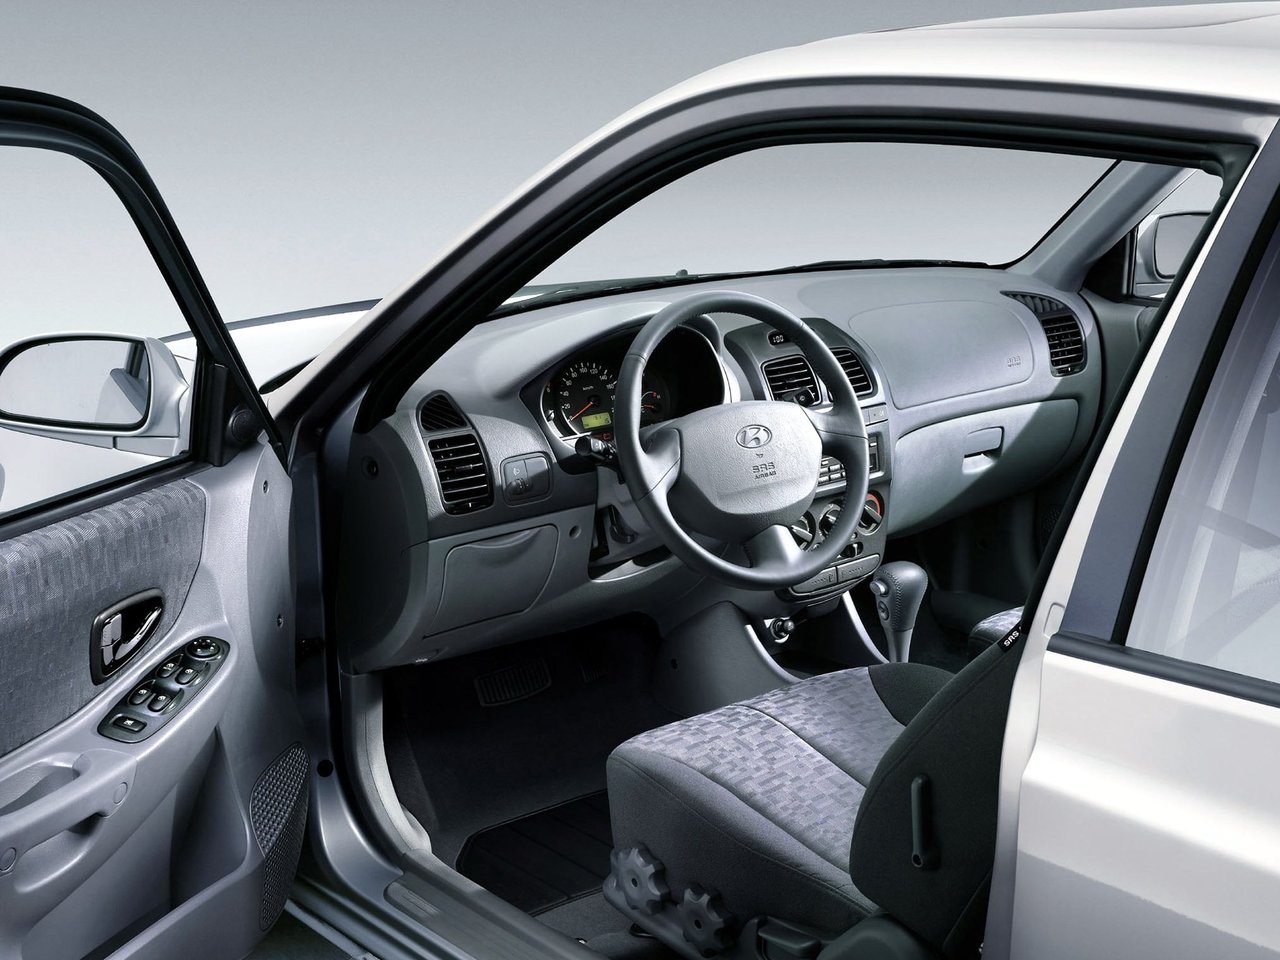 Tải ảnh xe Hyundai Accent cực chi tiết 35